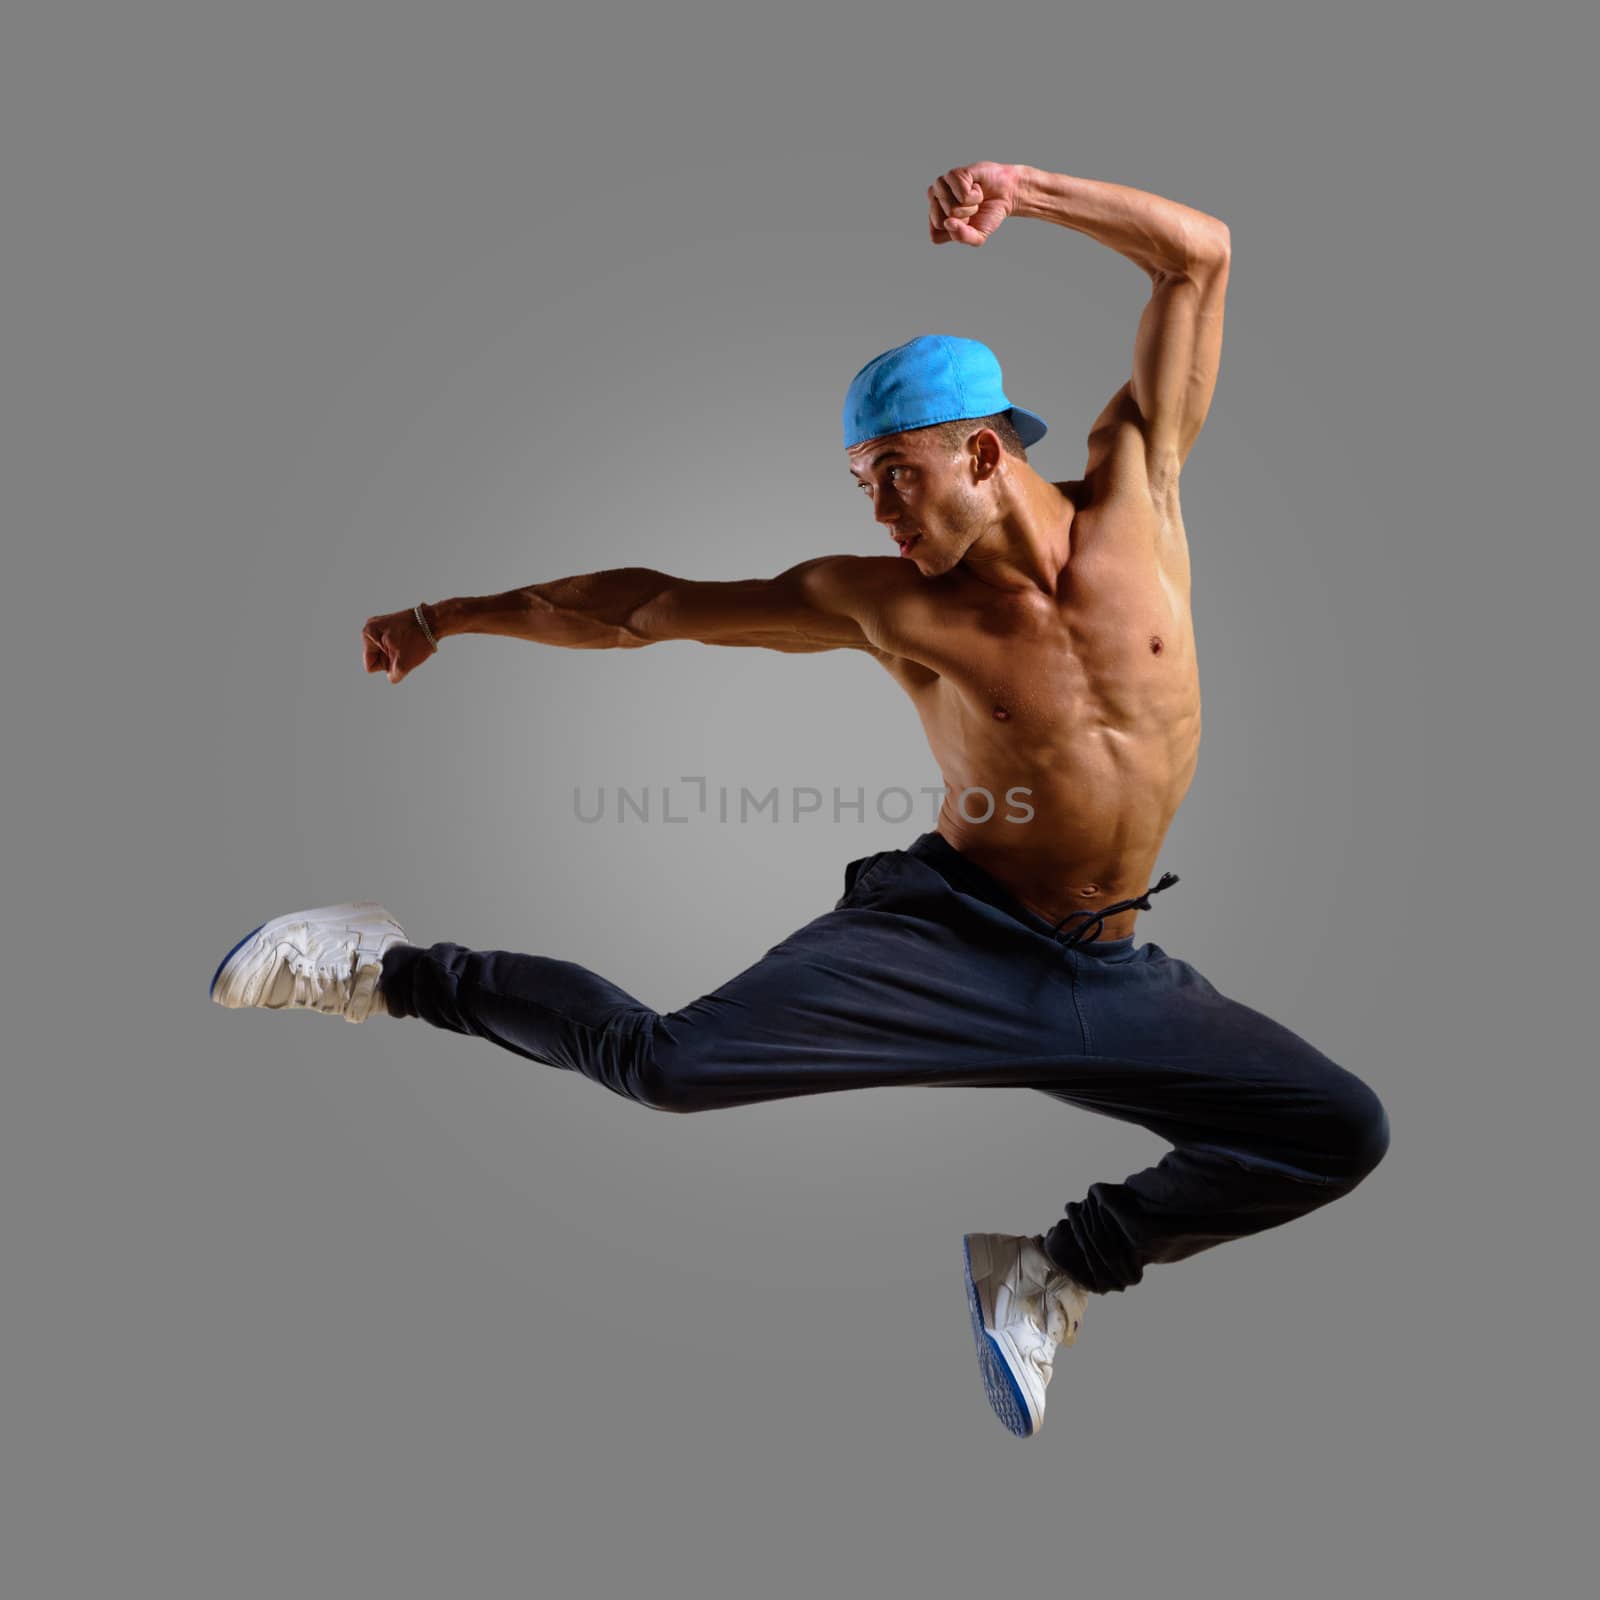 dancer jumping by adam121